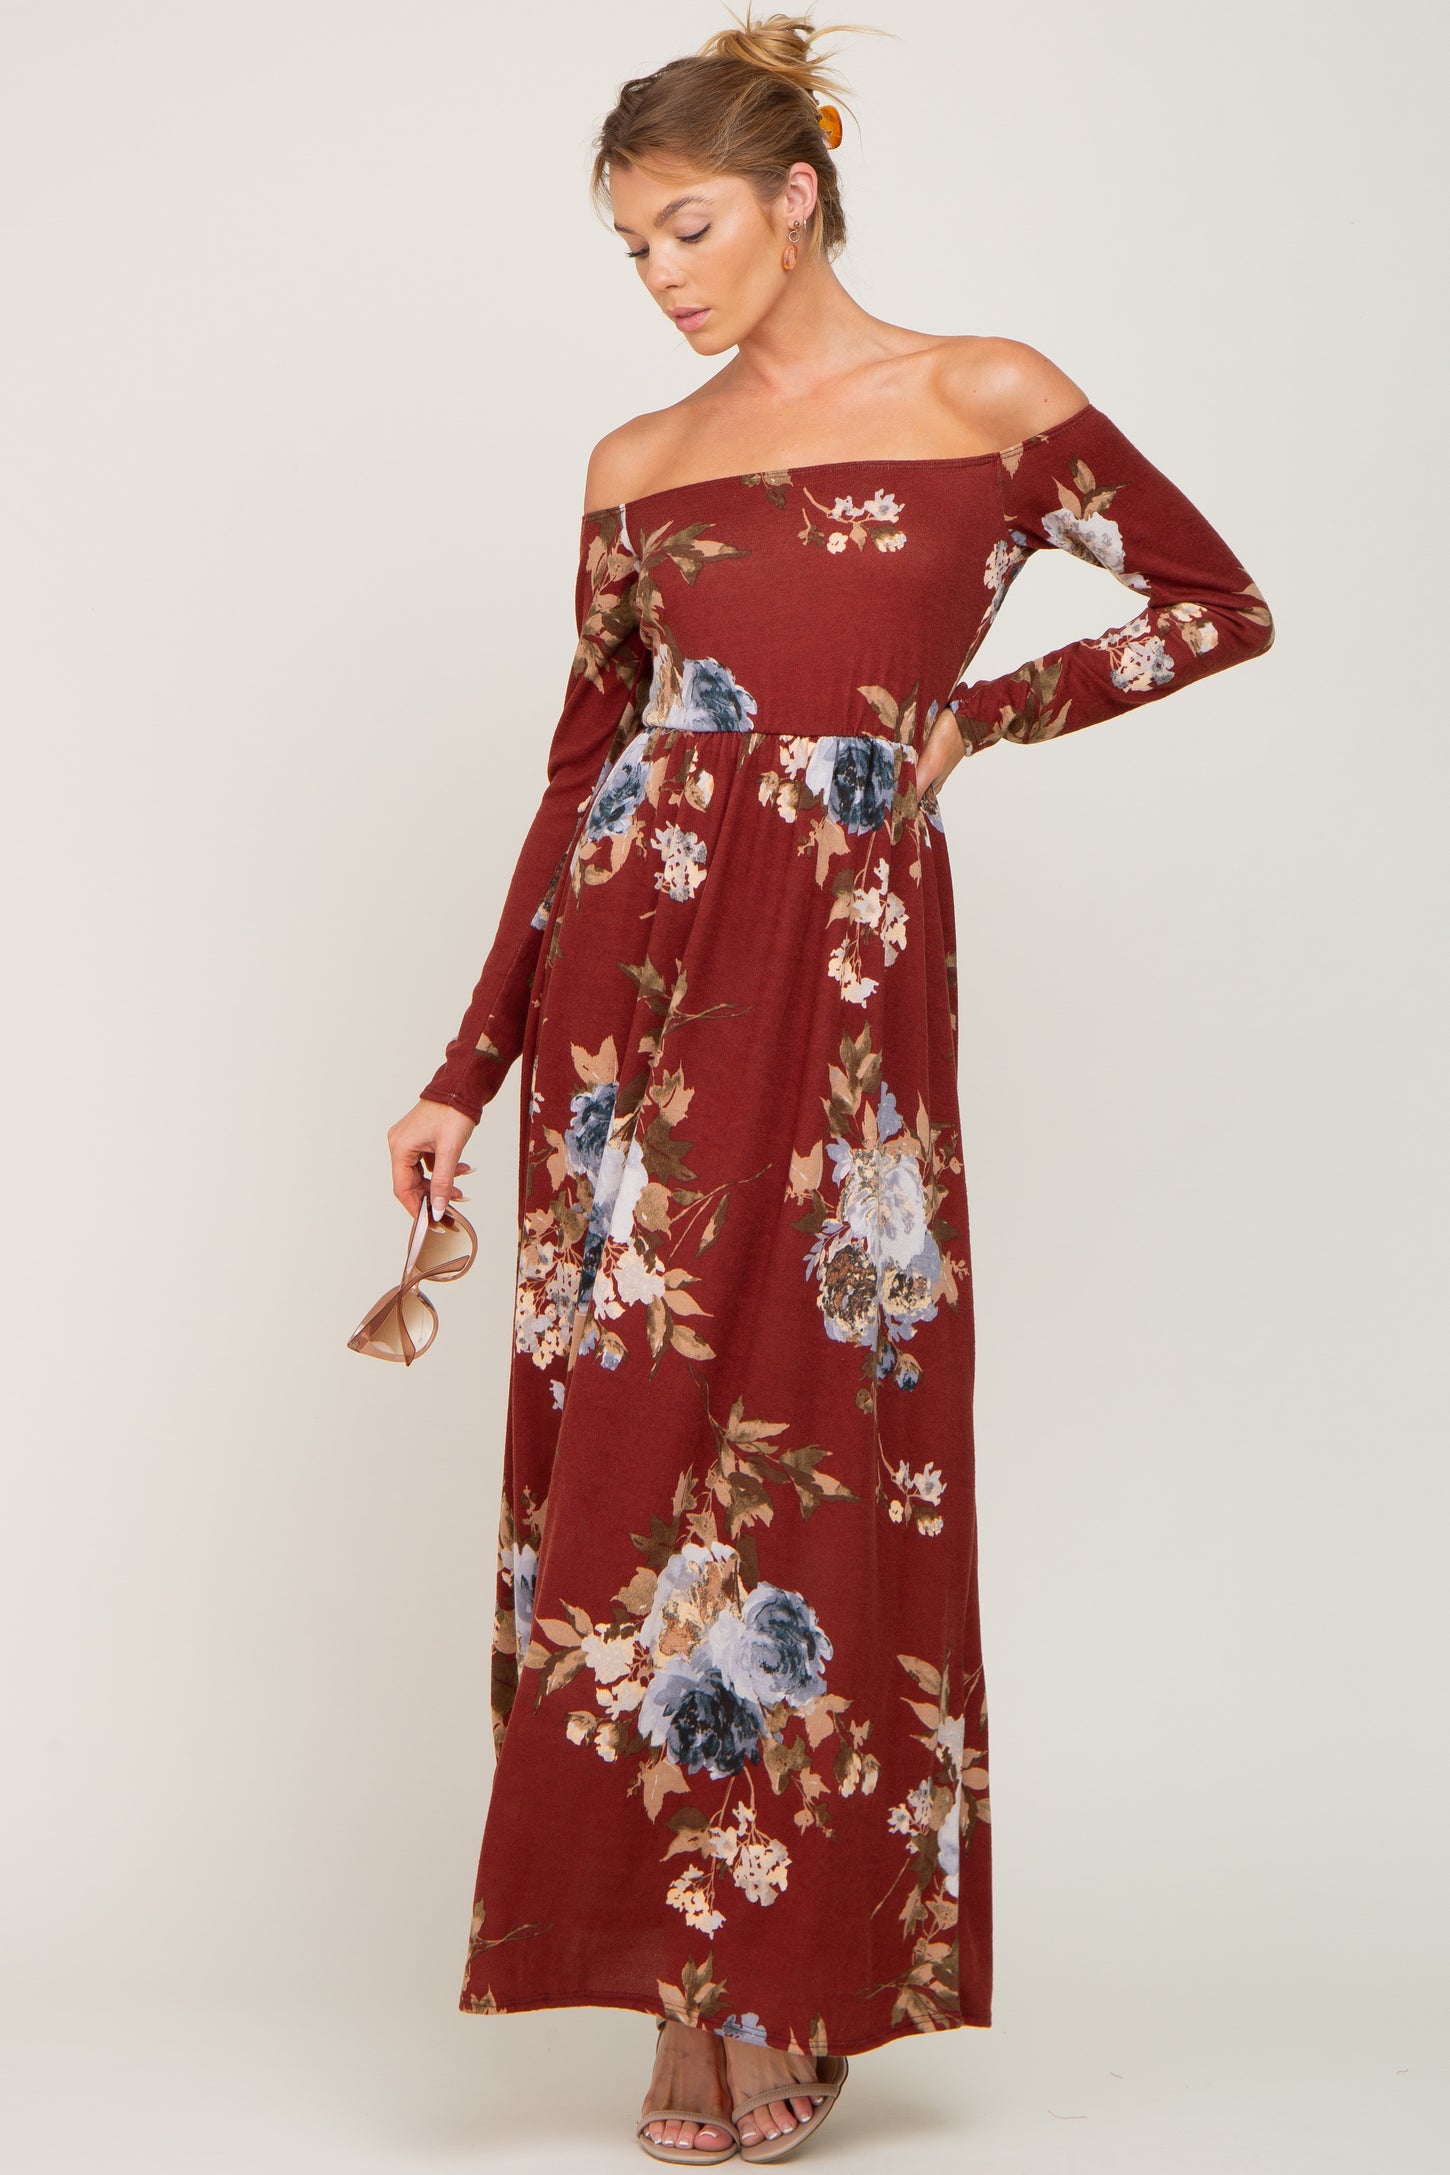 Burgundy Floral Off Shoulder Long Sleeve Maternity Maxi Dress